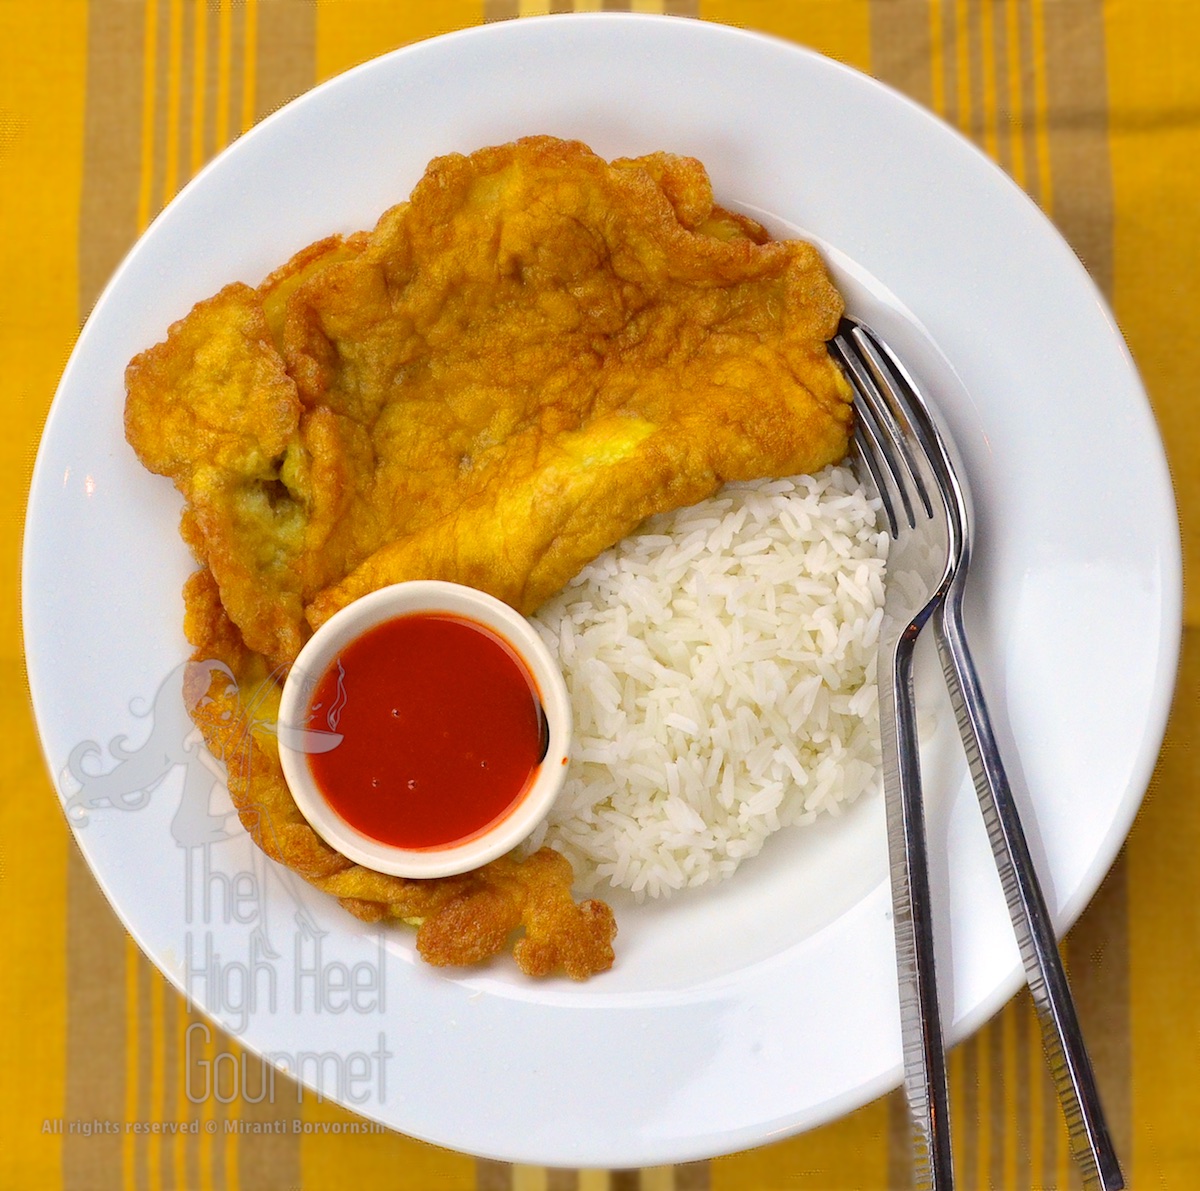 Thai Plain Deep Fried Omelette - Standard Khai Jiao by The High Heel Gourmet